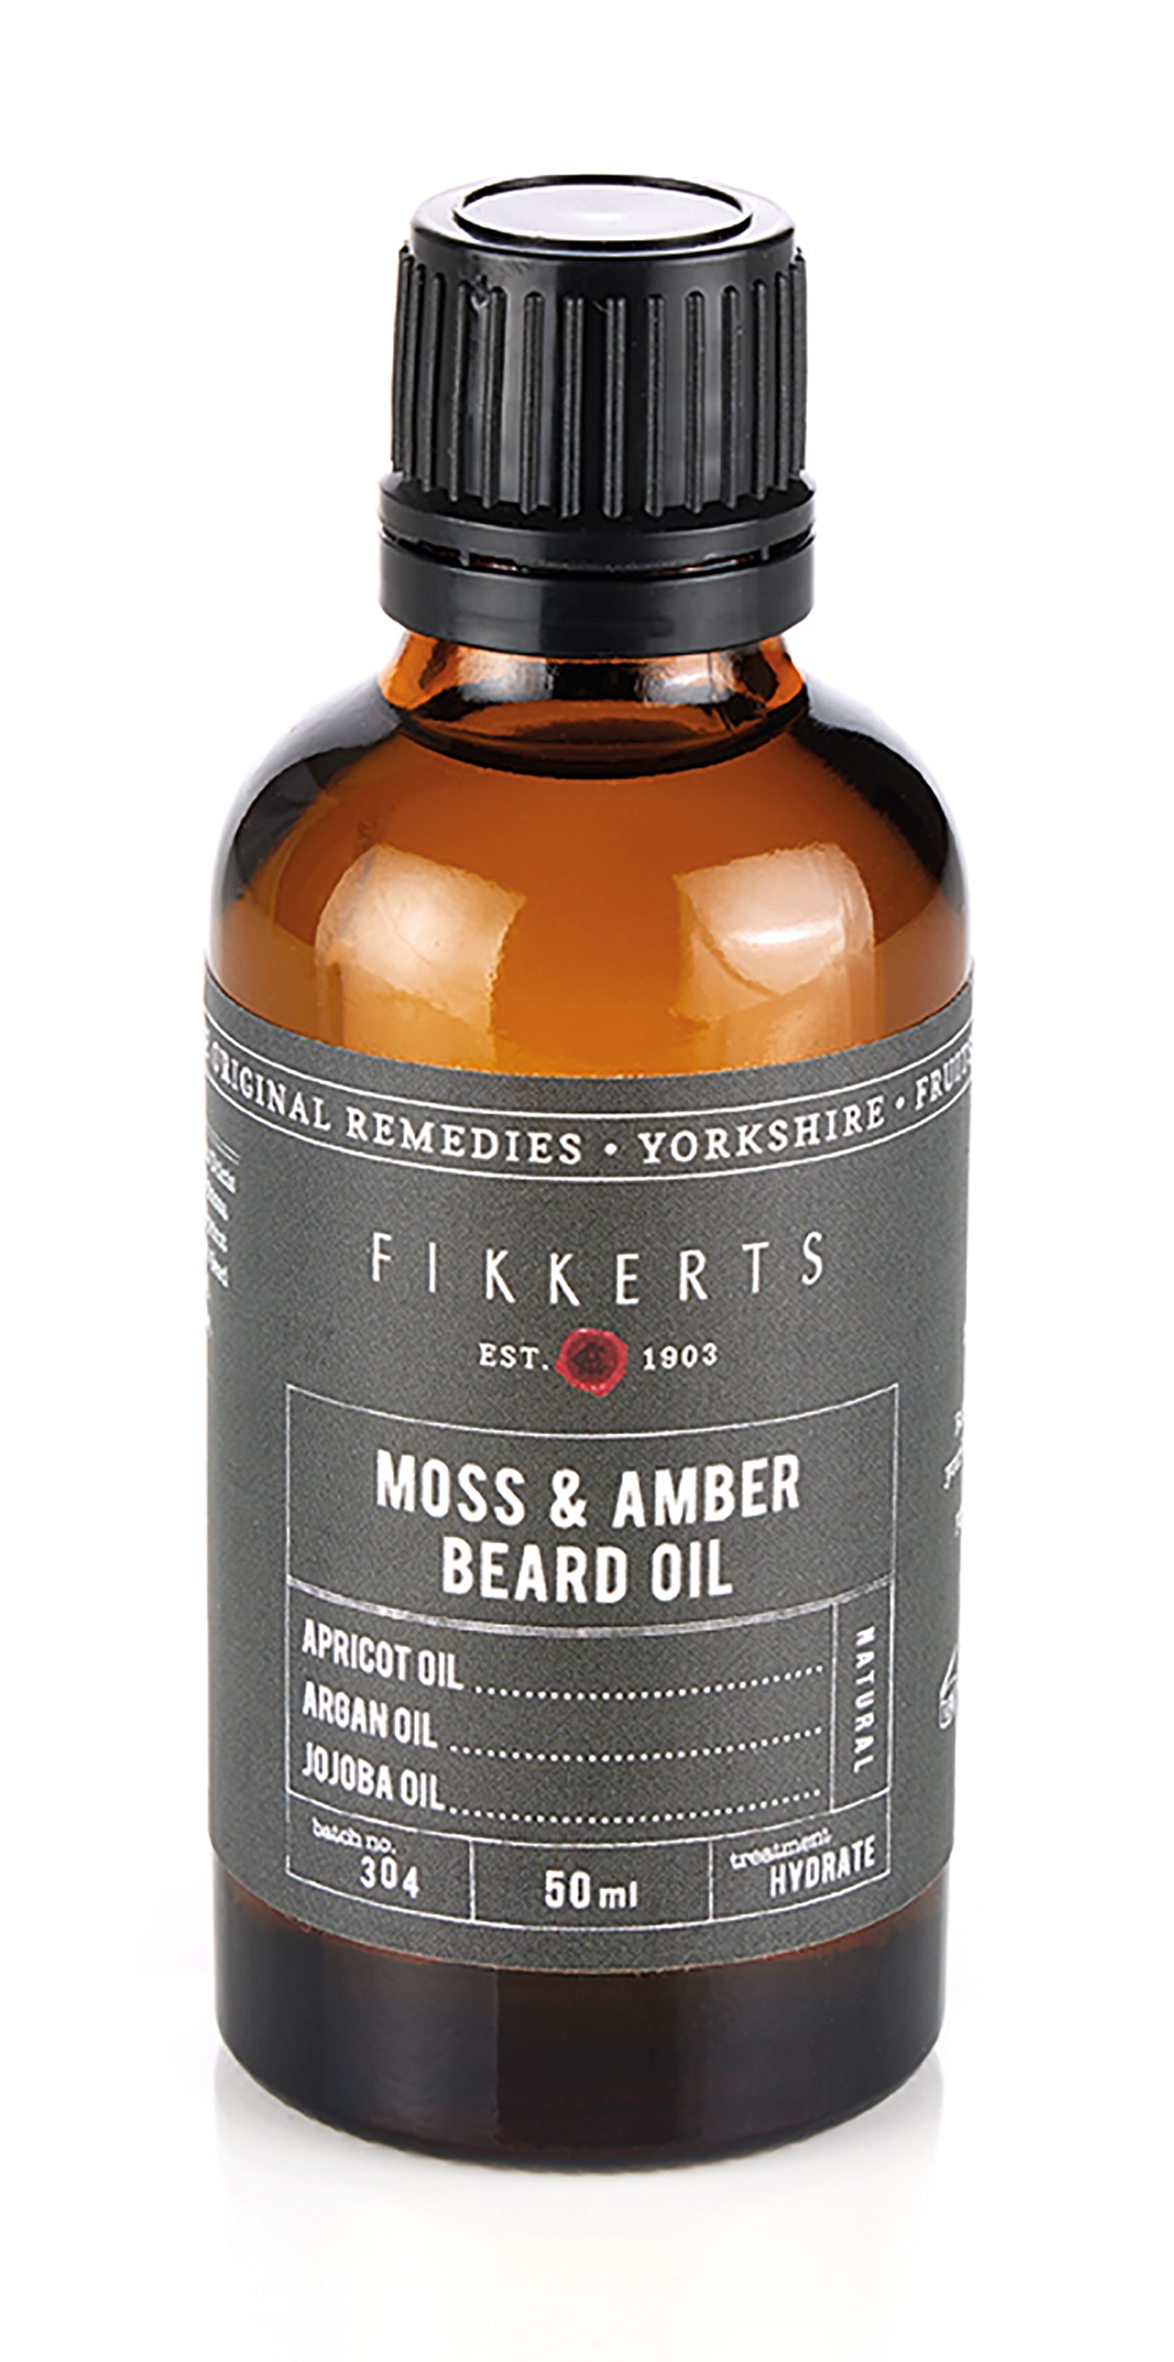 Moss & Amber Beard Oil Gentleman's